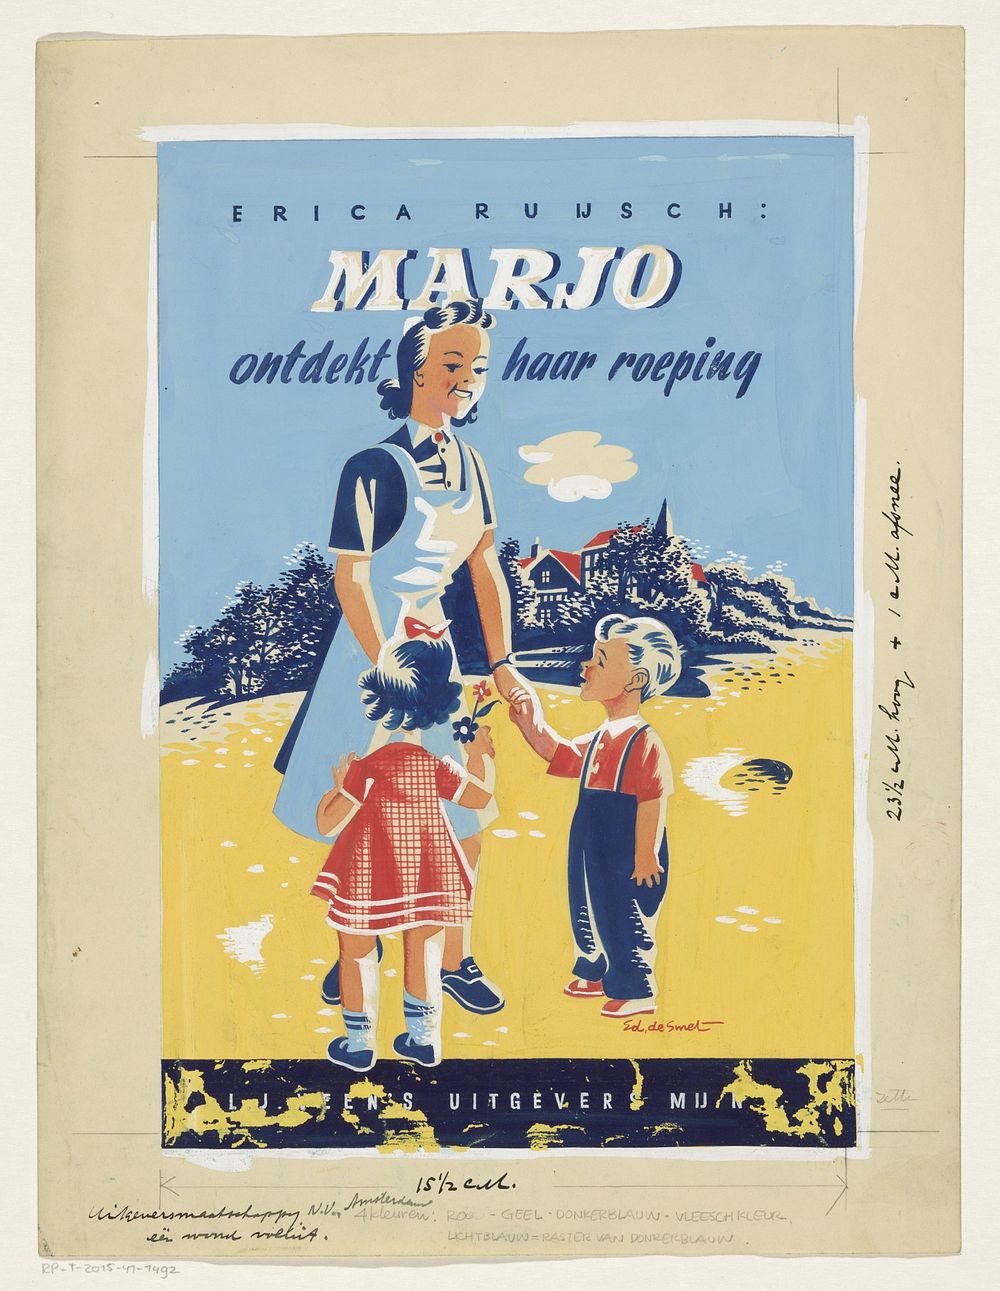 Bandontwerp voor: Erica Ruijsch, Marjo ontdekt haar roeping, 1946 (in or before 1946) by Eddy de Smet